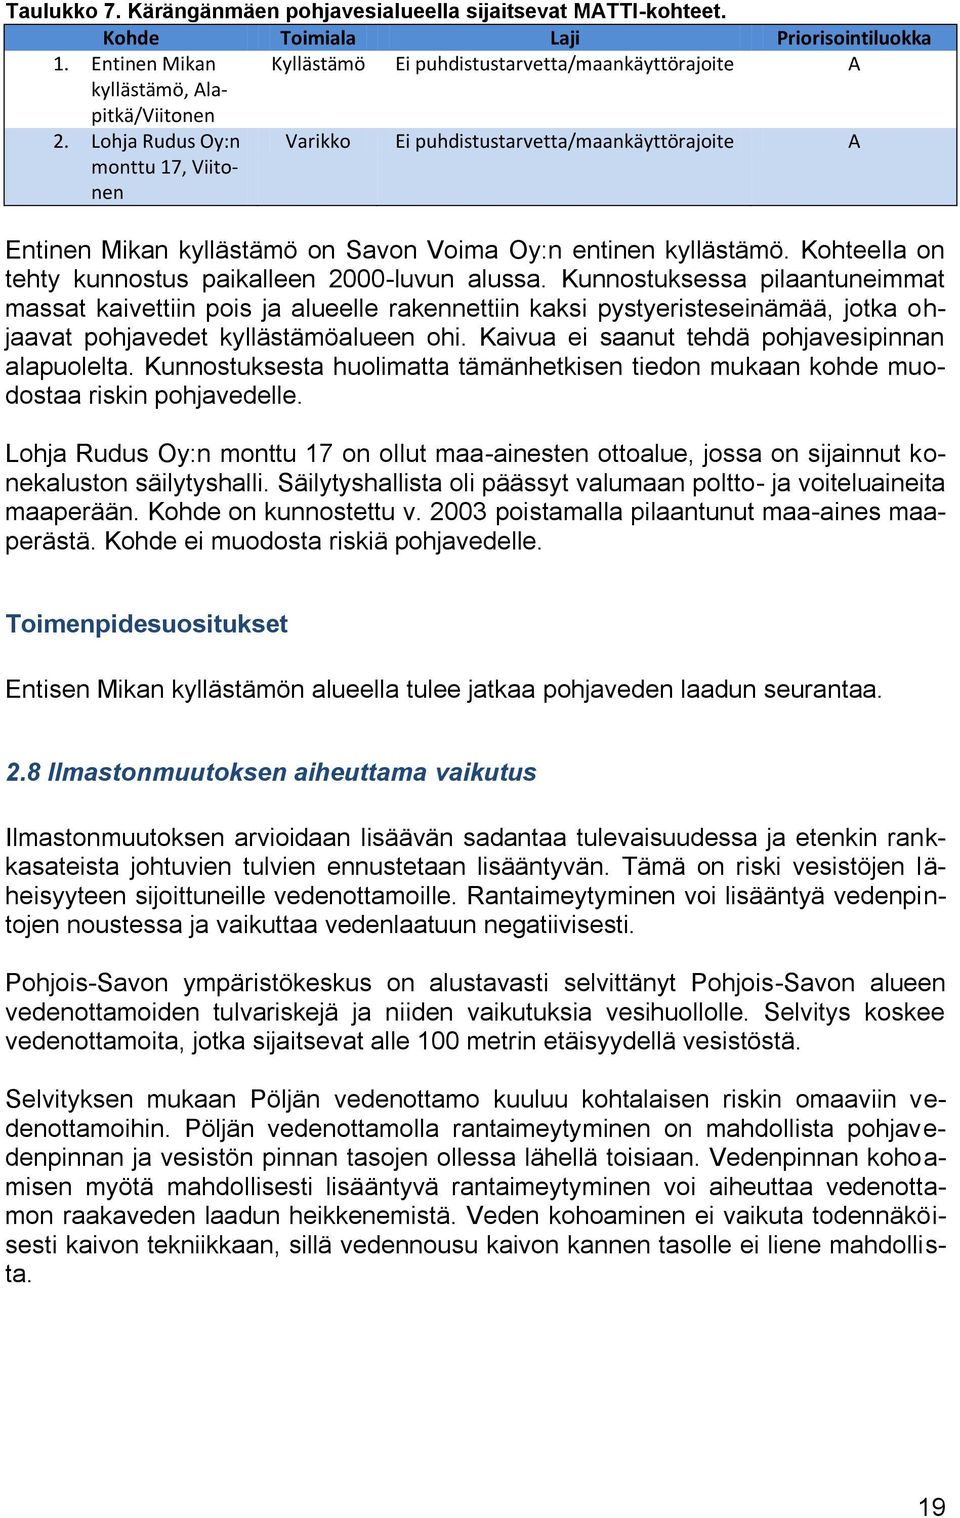 Lohja Rudus Oy:n monttu 17, Viitonen Varikko Ei puhdistustarvetta/maankäyttörajoite A Entinen Mikan kyllästämö on Savon Voima Oy:n entinen kyllästämö.